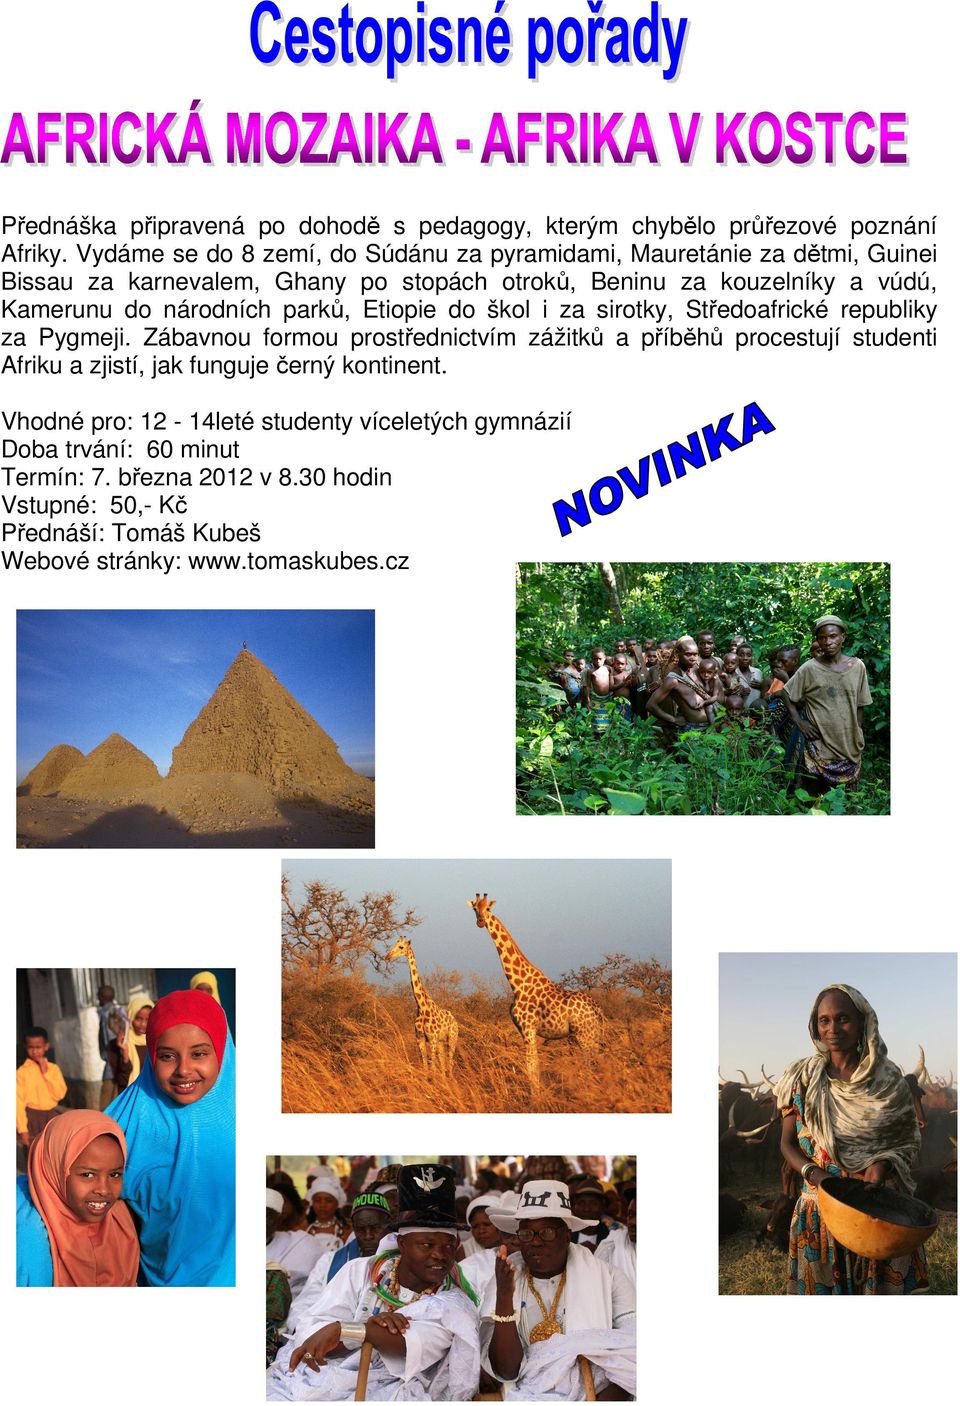 Kamerunu do národních parků, Etiopie do škol i za sirotky, Středoafrické republiky za Pygmeji.